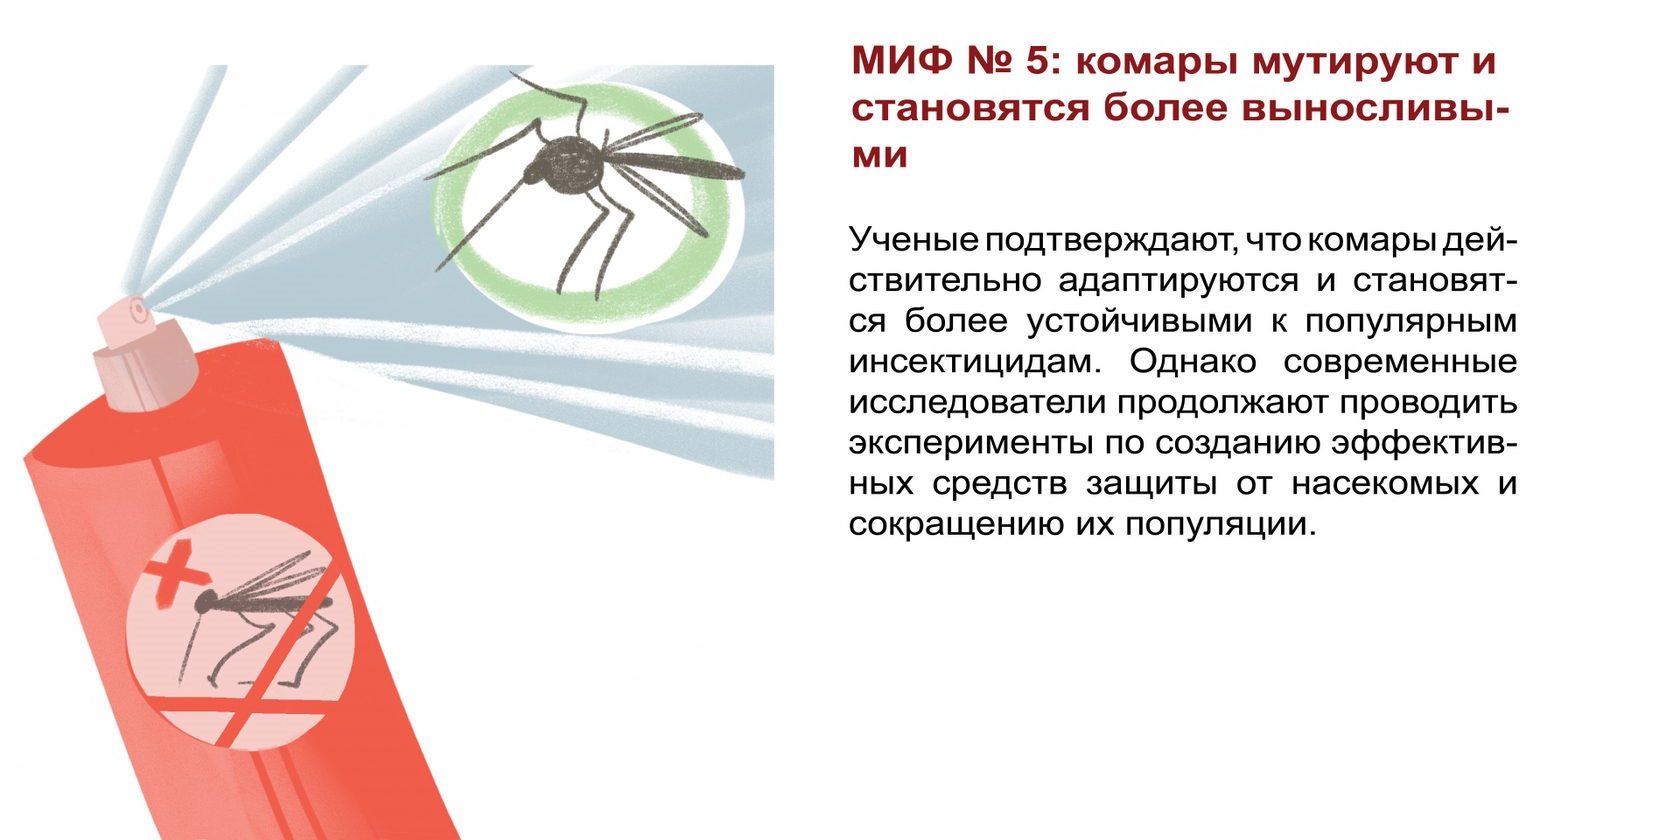 Защита от насекомых обж. Мифы о комарах. Способы защиты насекомых. Прибор защиты от кровососущих насекомых схема. Как защититься от кровососущих насекомых.